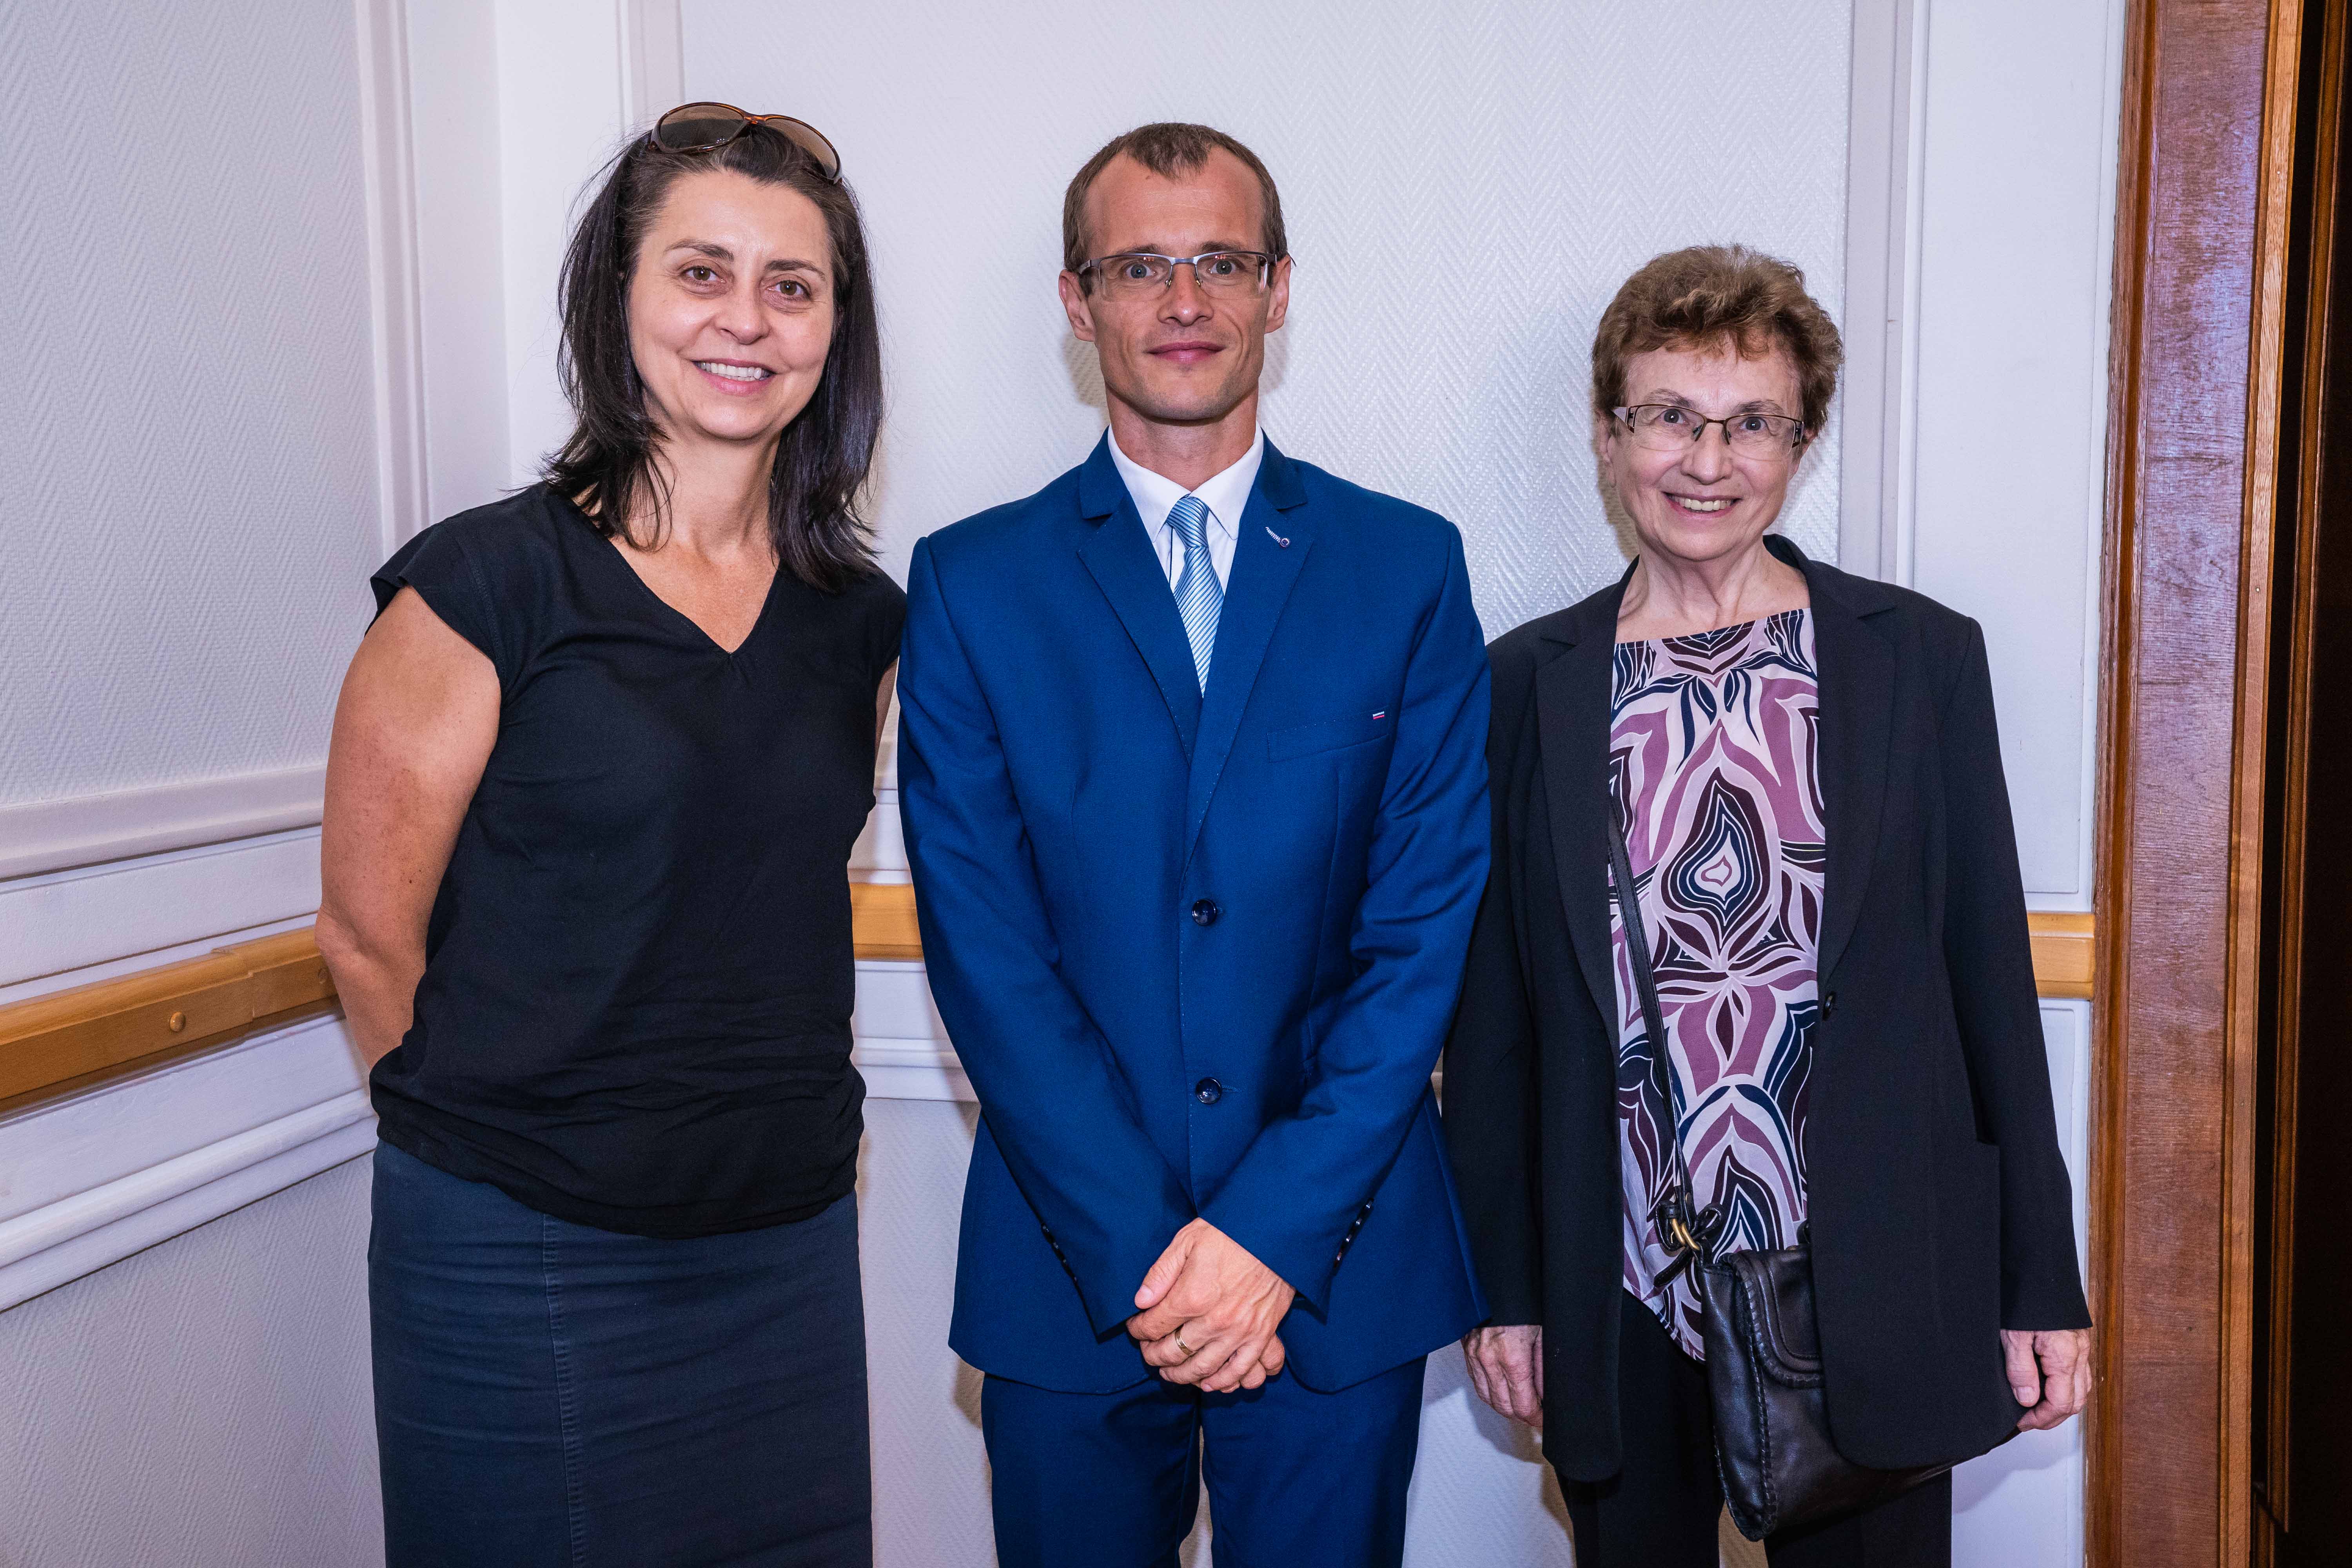 Naši kolegovia Branislav Šprocha a Klara Kohoutová získali prestížne Ceny SAV